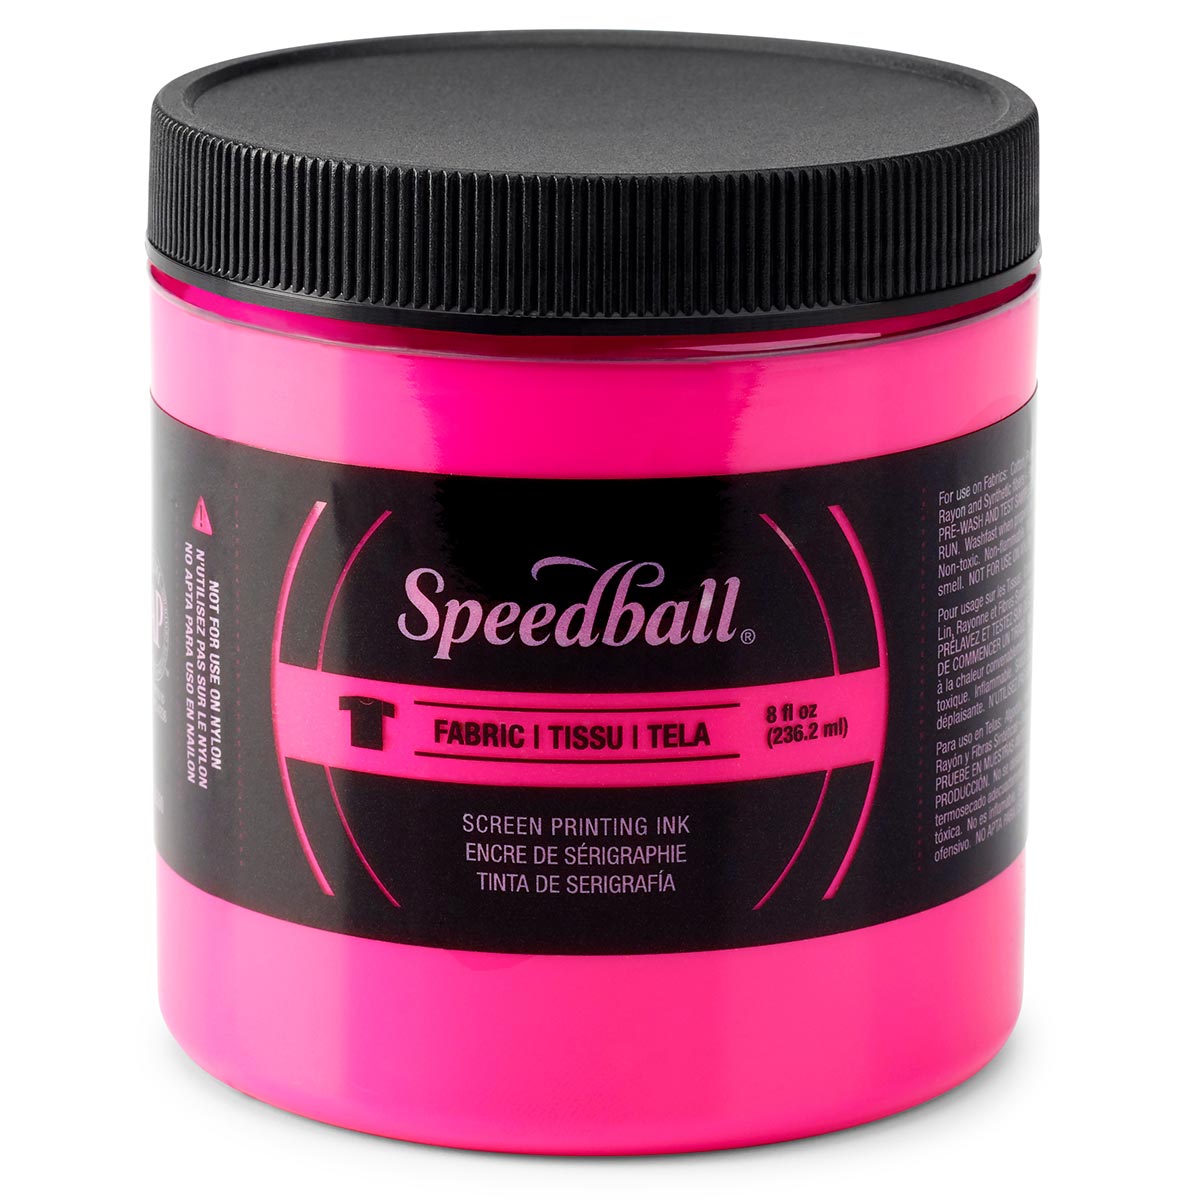 Speedball-Inchiostro per serigrafia in tessuto 236ml (8oz) -Magenta fluorescente